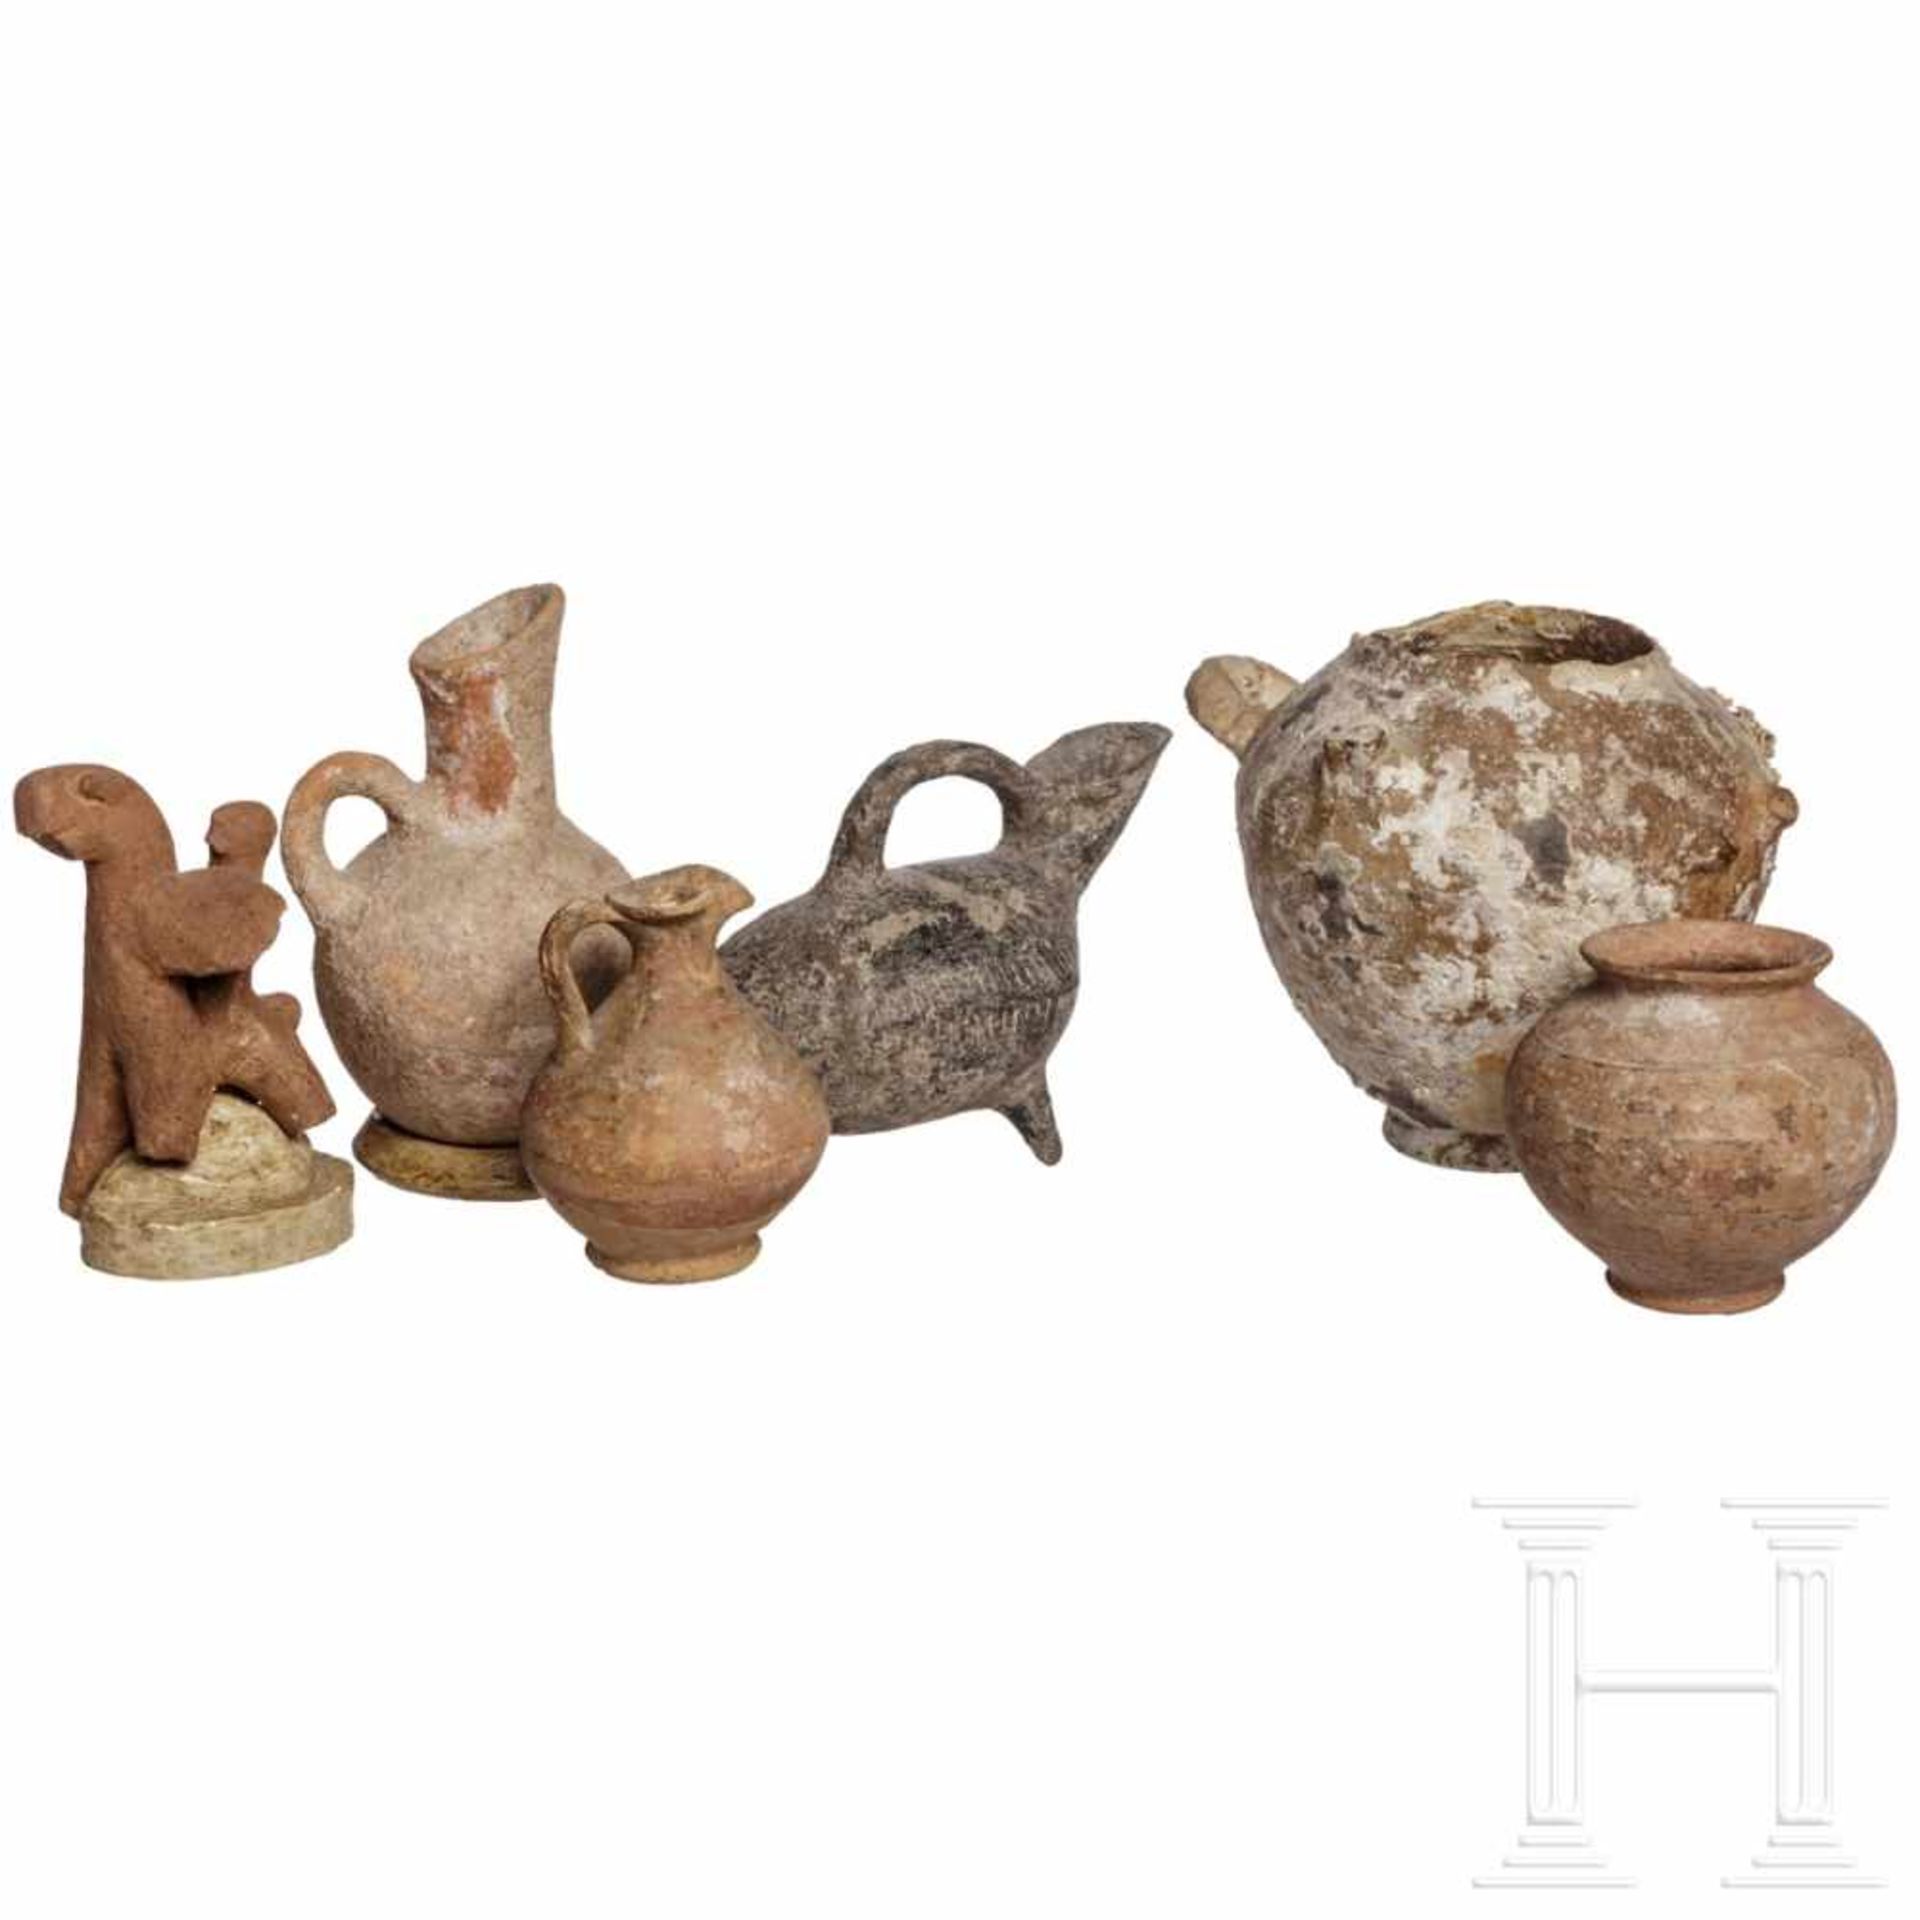 Hethitische Keramikgruppe, Anatolien, 2. Jtsd. v. Chr.